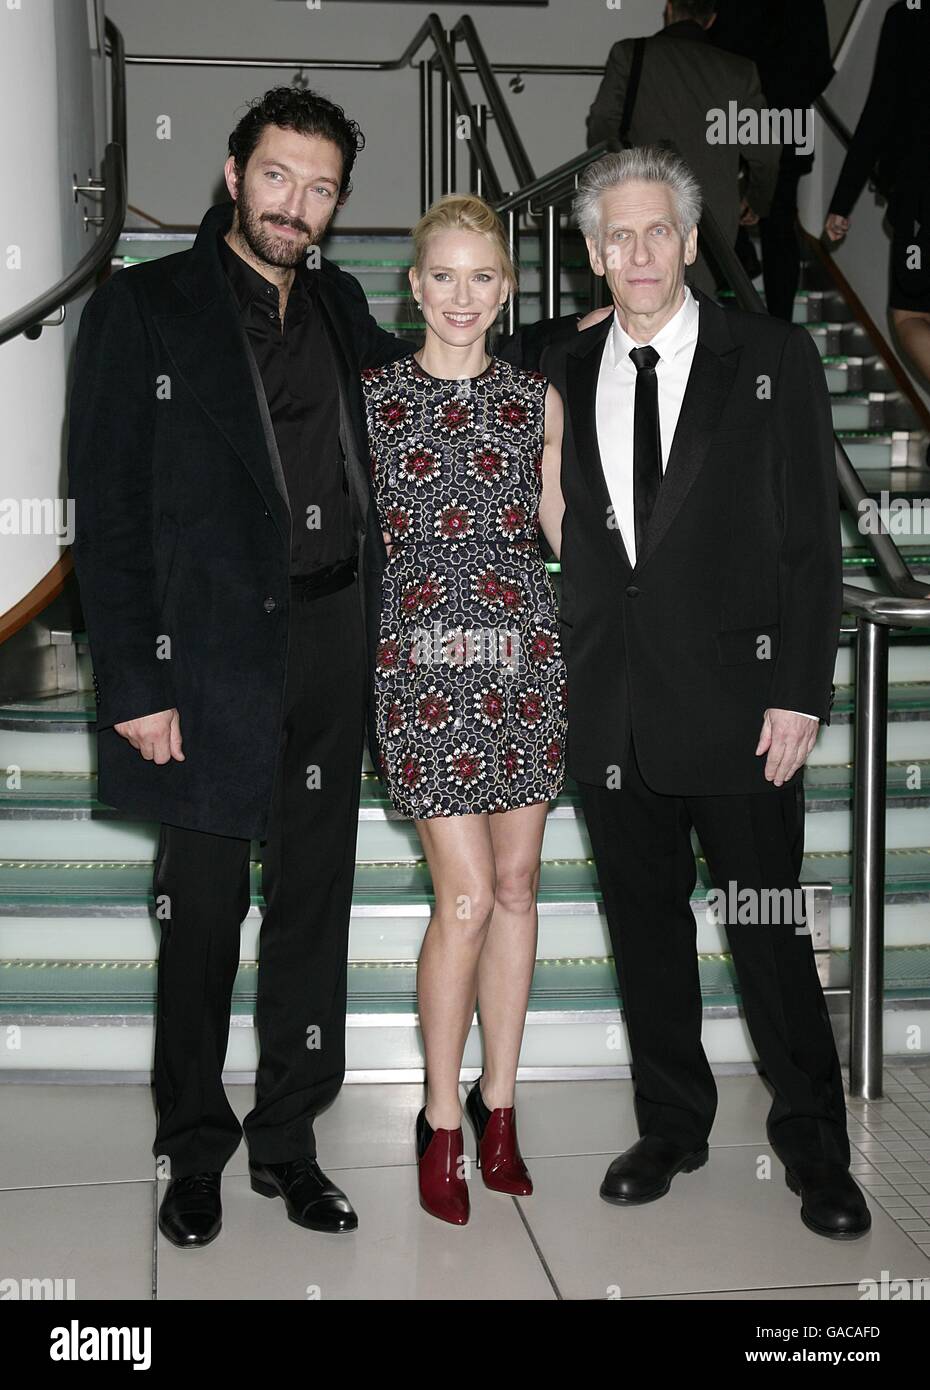 (De gauche à droite) Vincent Cassel, Naomi Watts et David Cronenberg arrivent pour la projection de Eastern Promises à l'Odeon Leicester Square, Londres, WC2. Banque D'Images